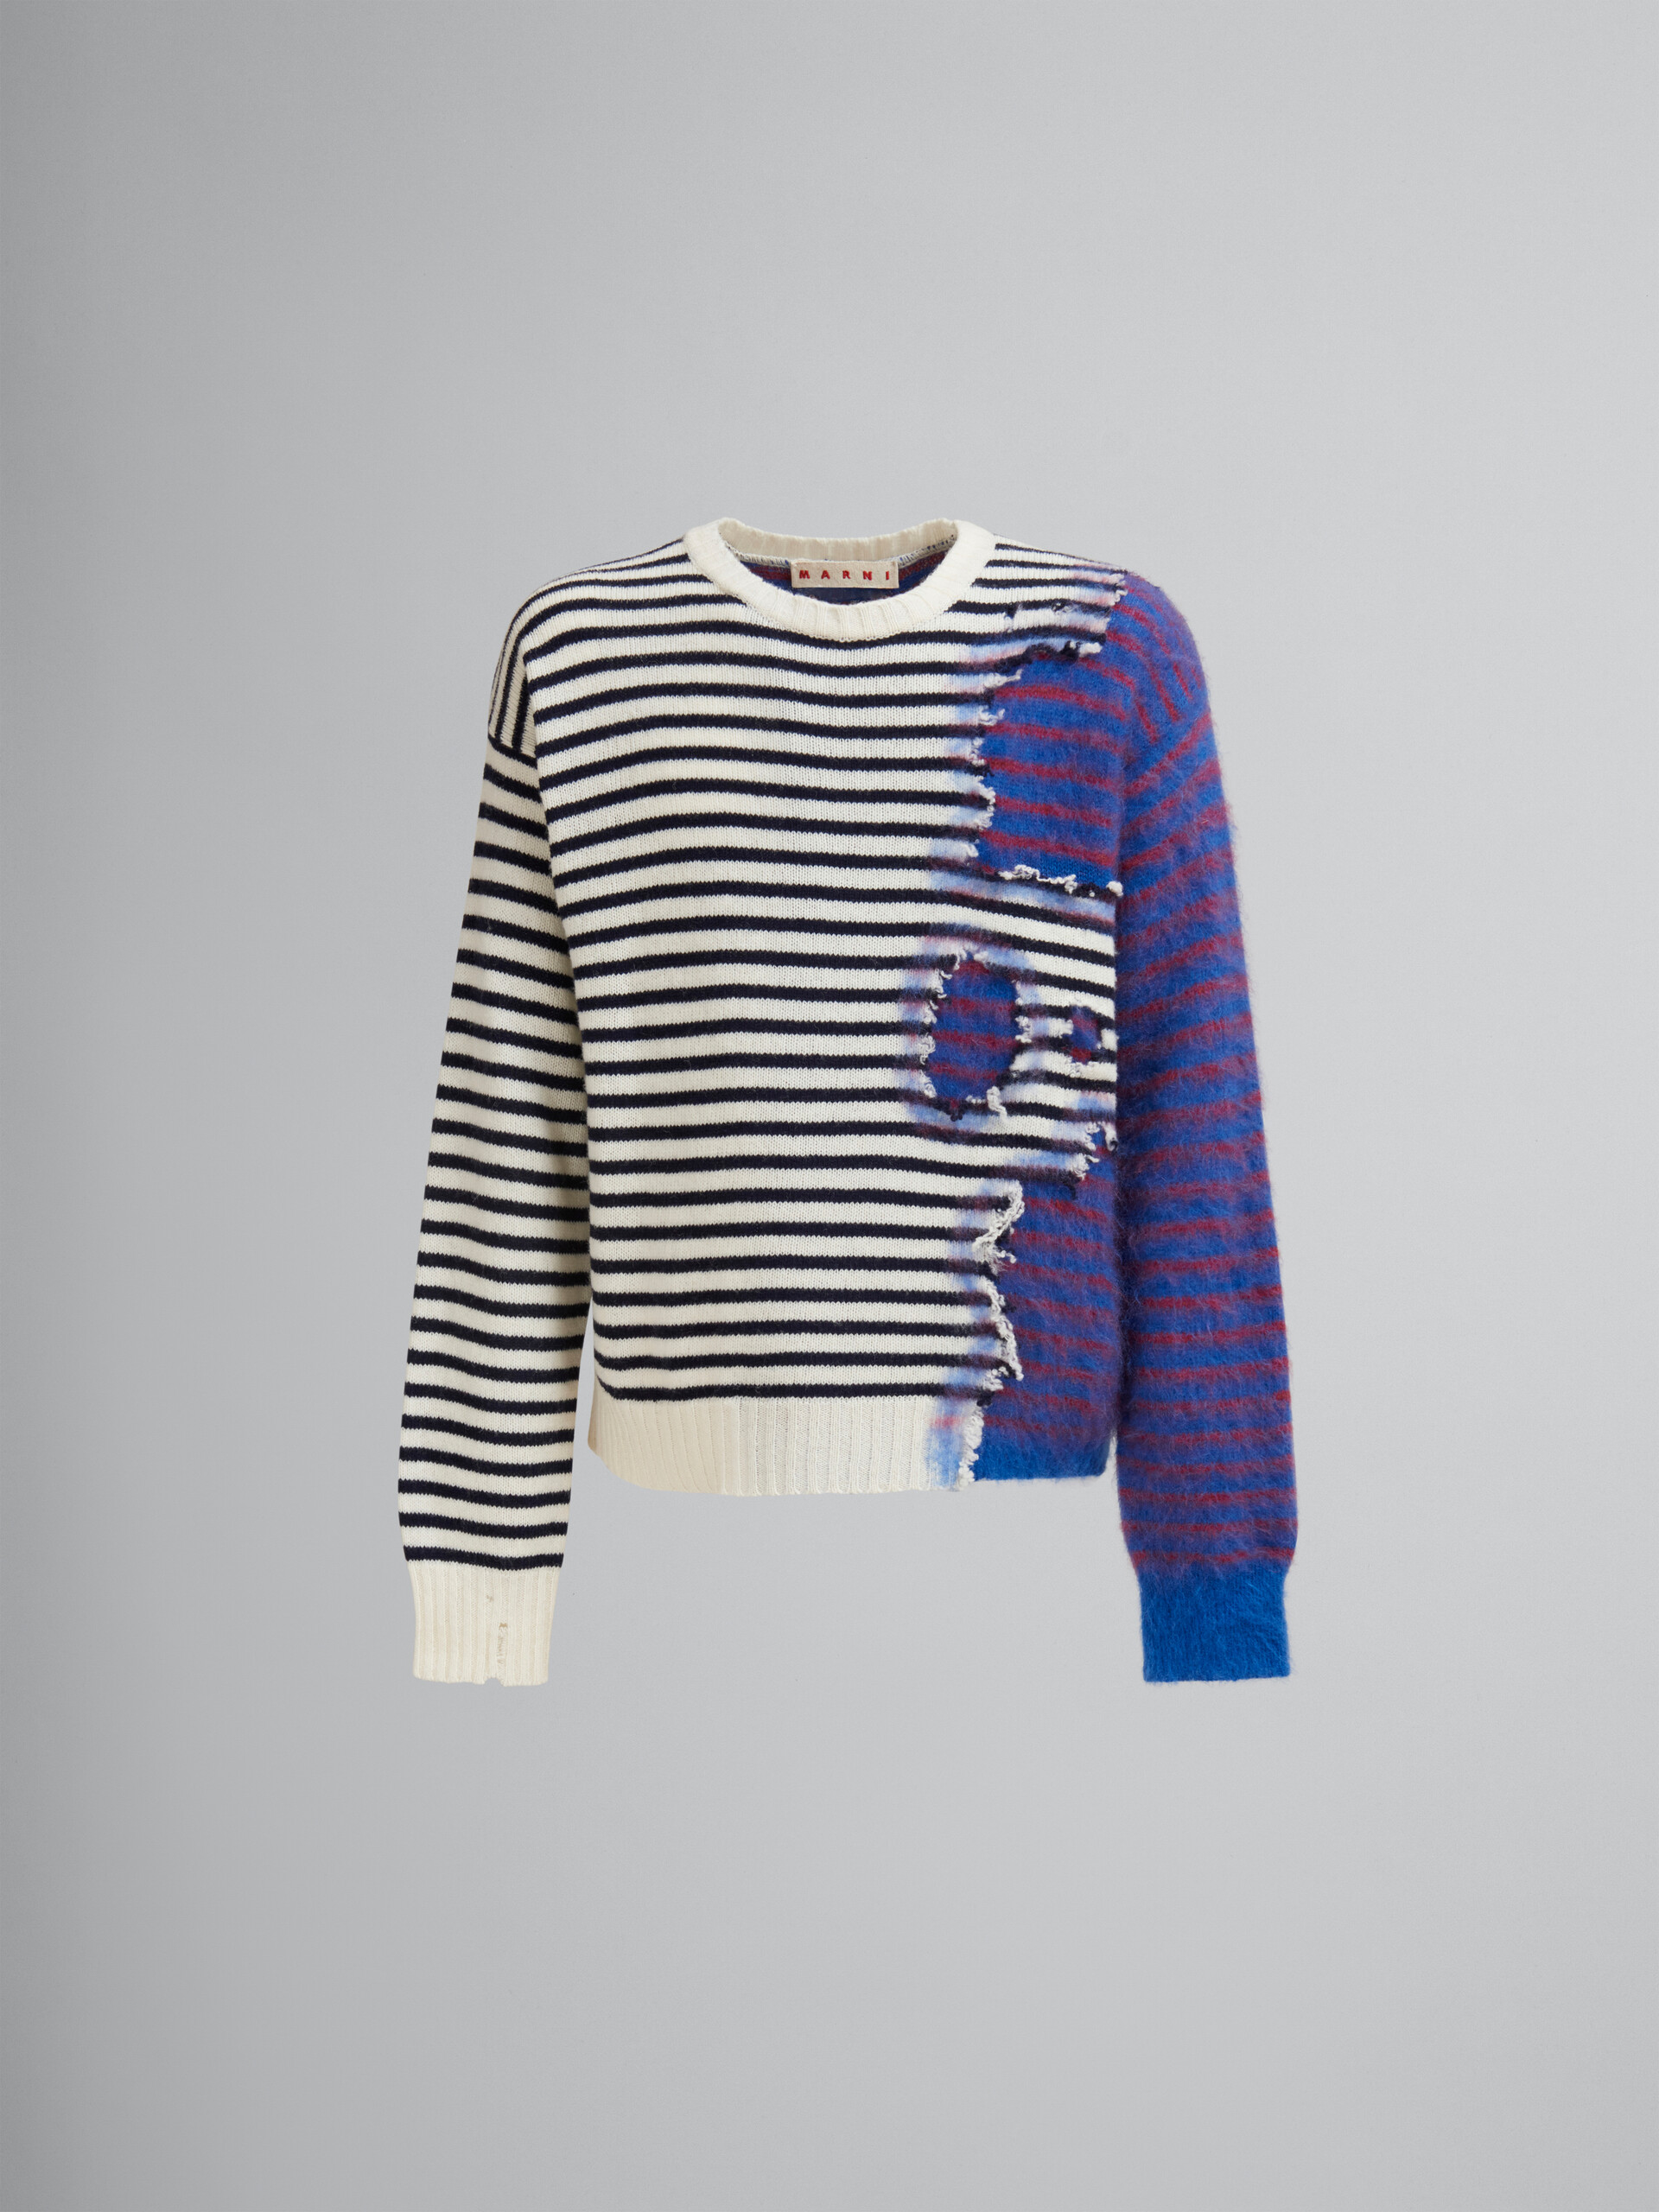 Jersey dos en uno multicolor de lana y mohair a rayas - jerseys - Image 1